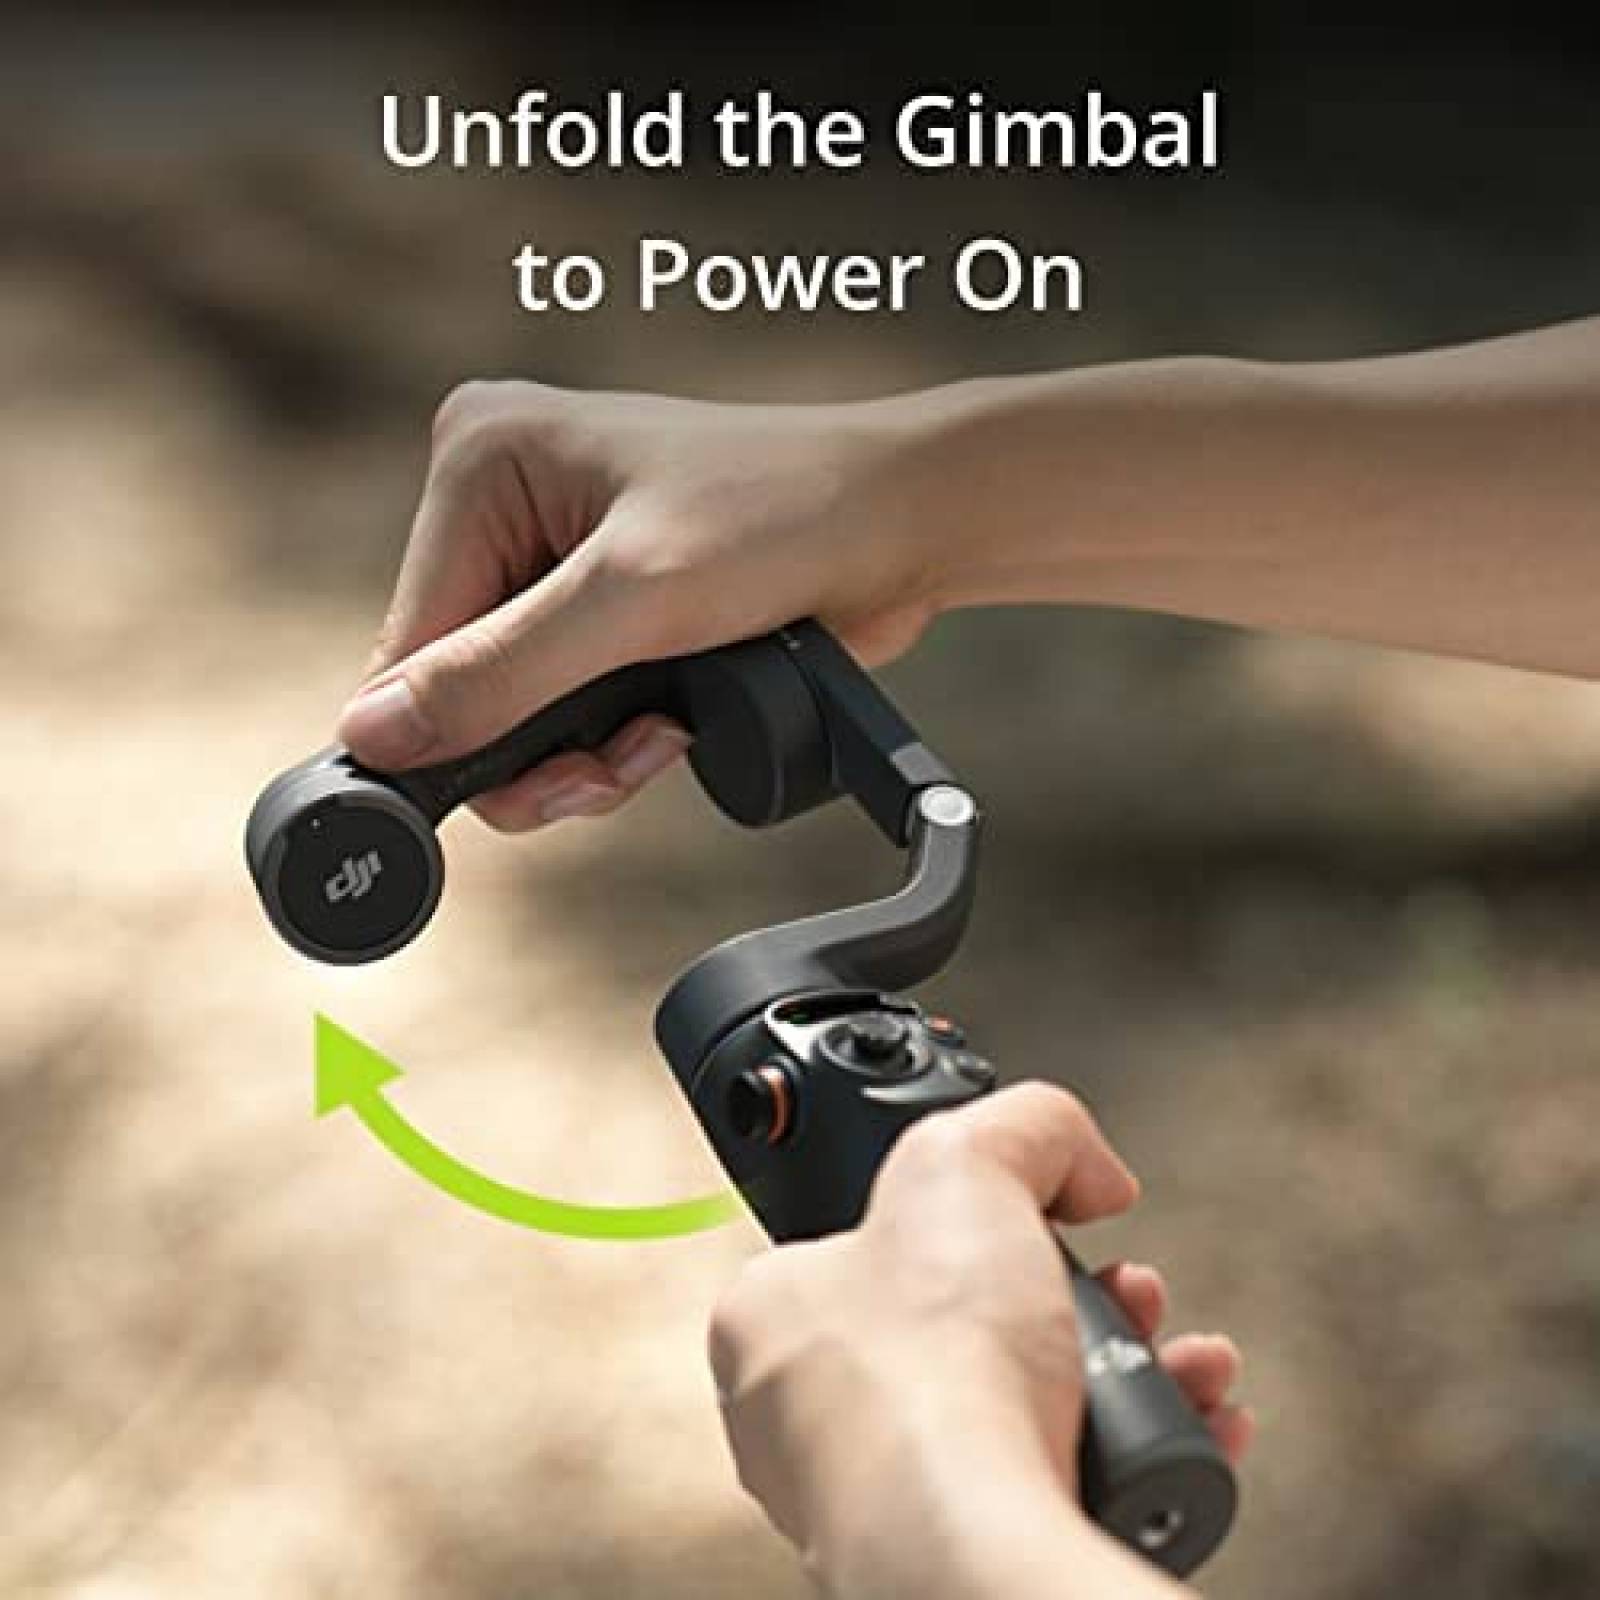 DJI Gimbal OSMO soporte de cámara de teléfono celular, negro